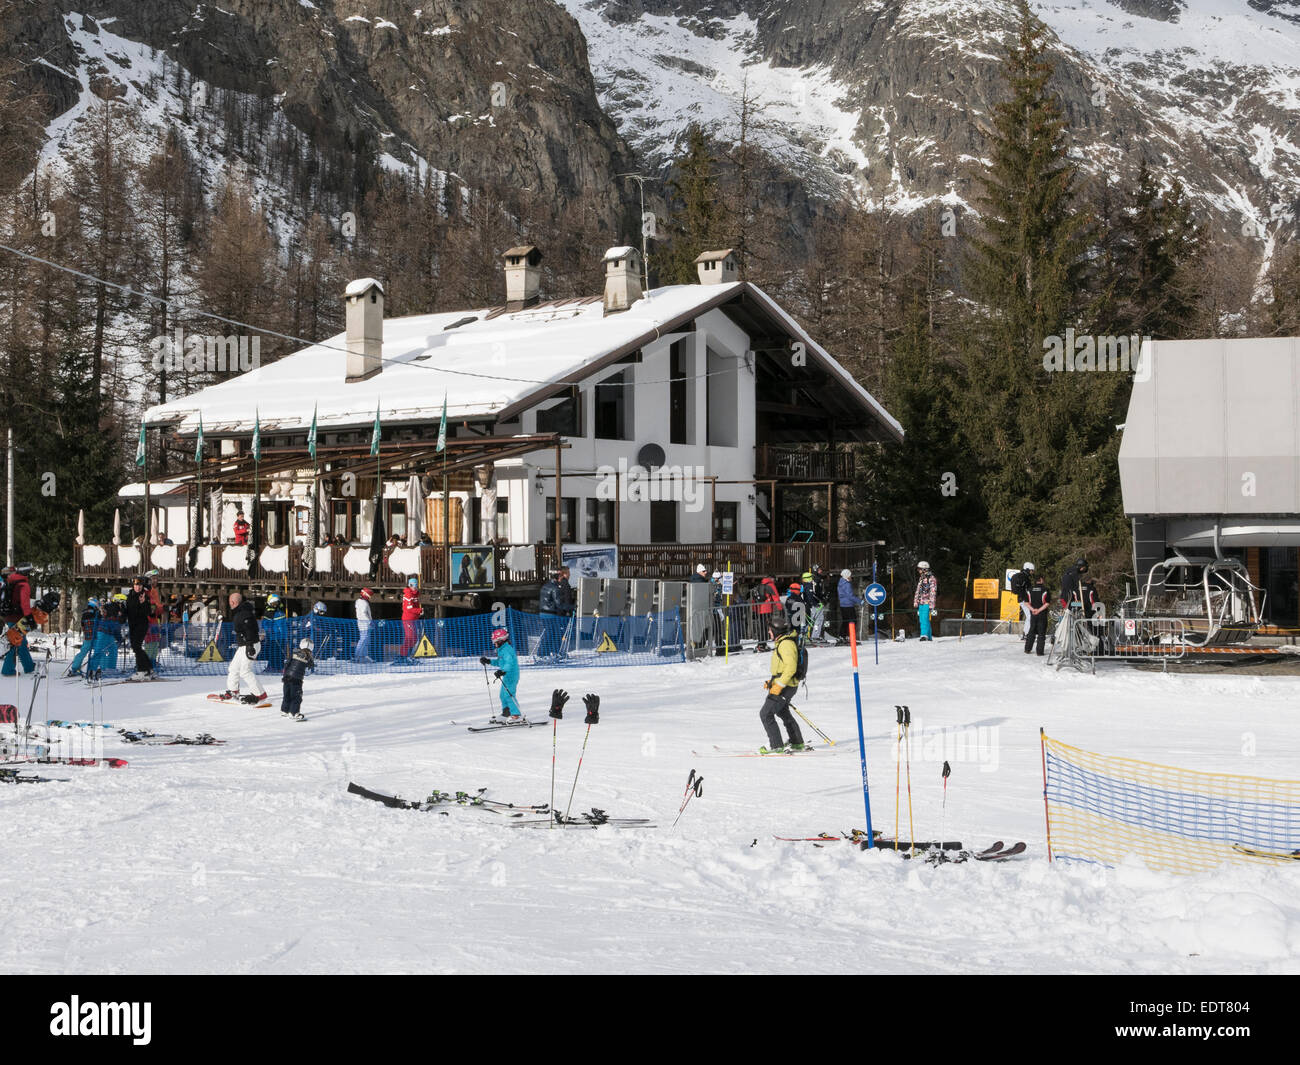 Restaurant Zerotta par télésiège inférieur sur la station de ski de neige Alpes italiennes de ski de Courmayeur Vallée d'Aoste Italie Europe Banque D'Images